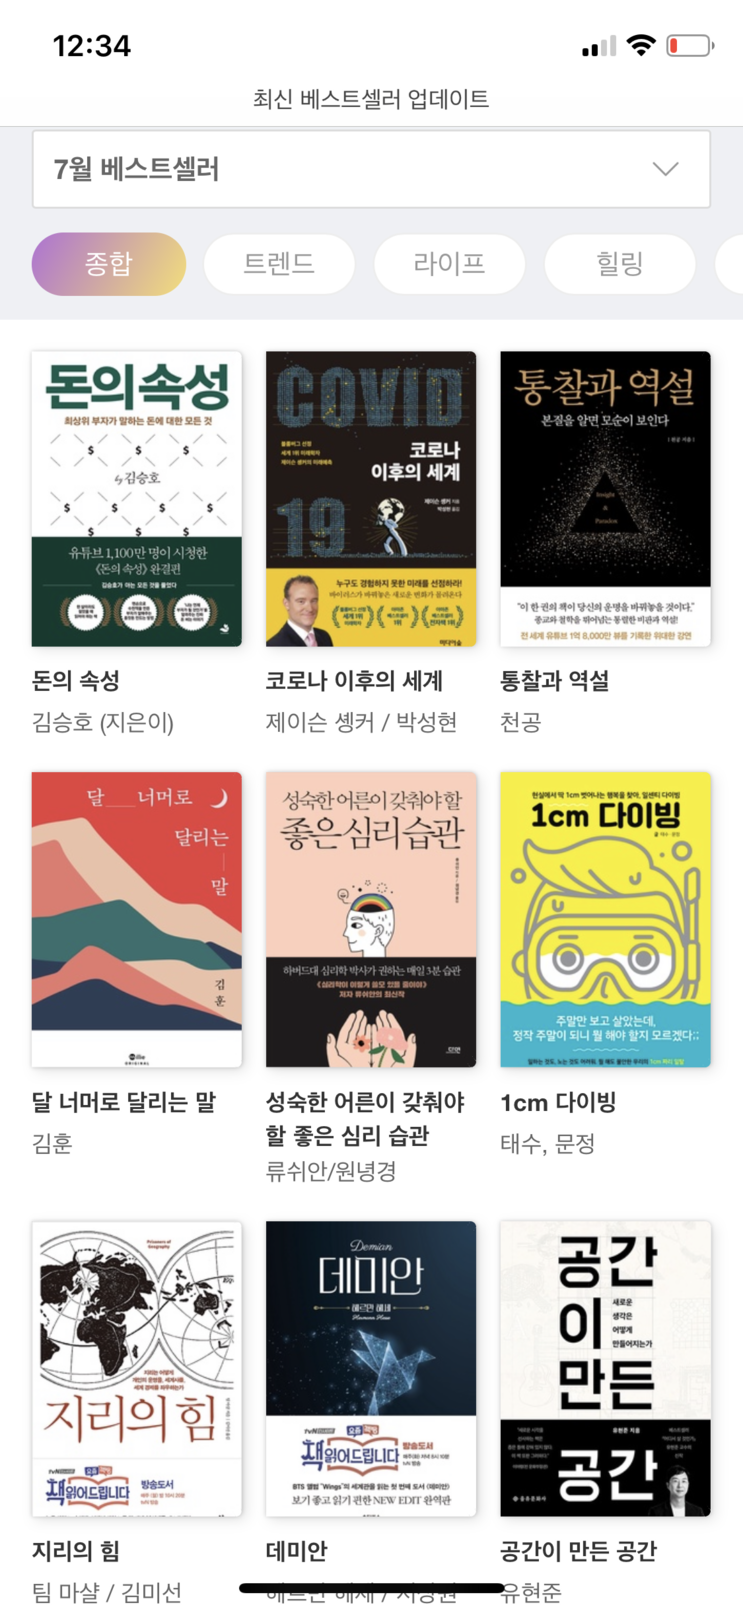 해외에서 한국책 읽고 싶을 때 밀리의 서재로 마음껏 읽기(계속 쓸수밖에 없게 하는 기능들)